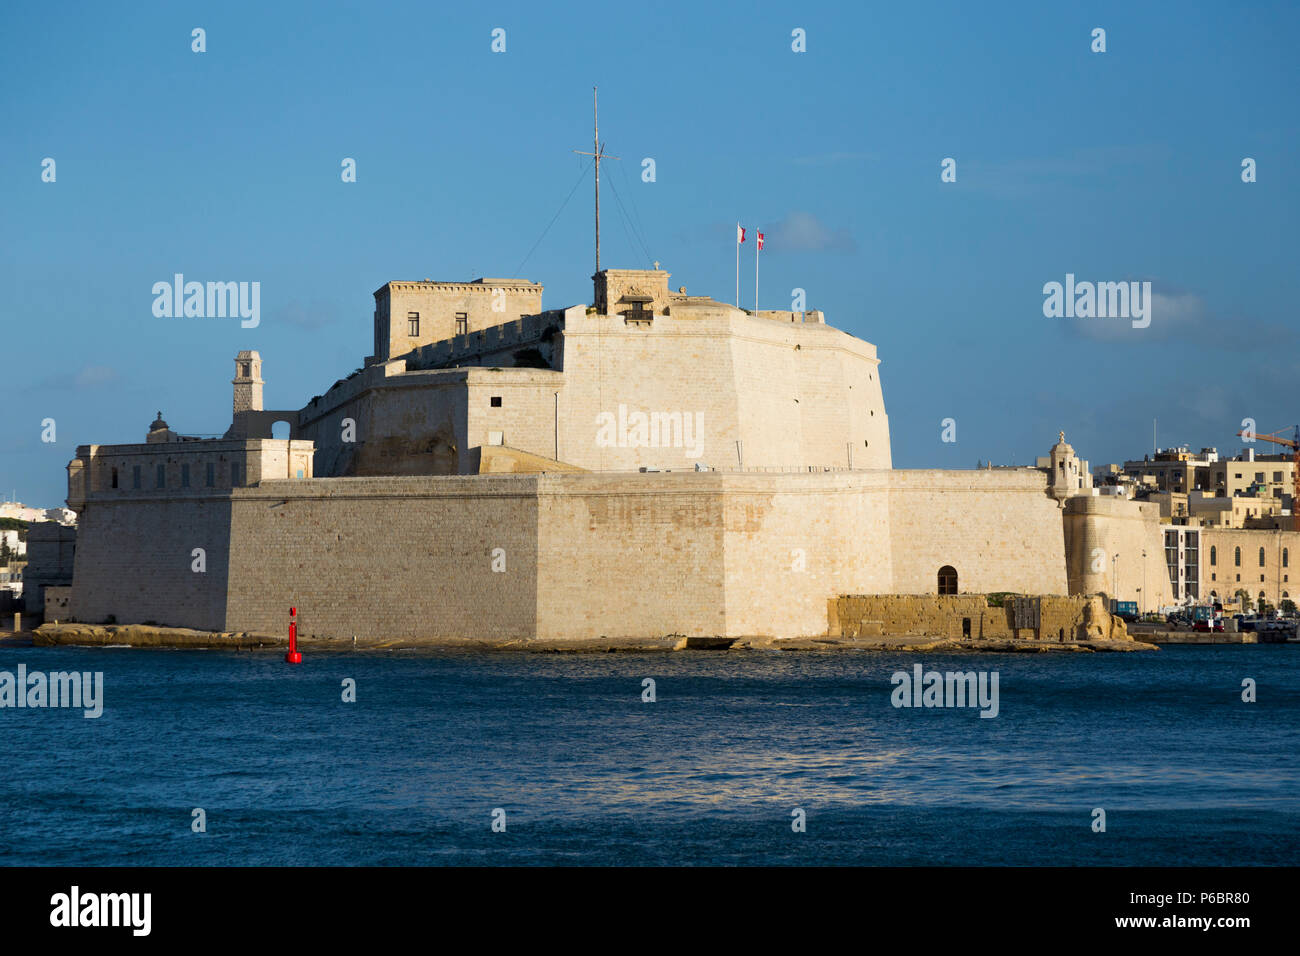 Fort St. Angelo/Fort St. Angelo ist ein geschützten fort in Portomaso, Malta, in der Mitte des Grand Harbour. Insel Malta. (91) Stockfoto